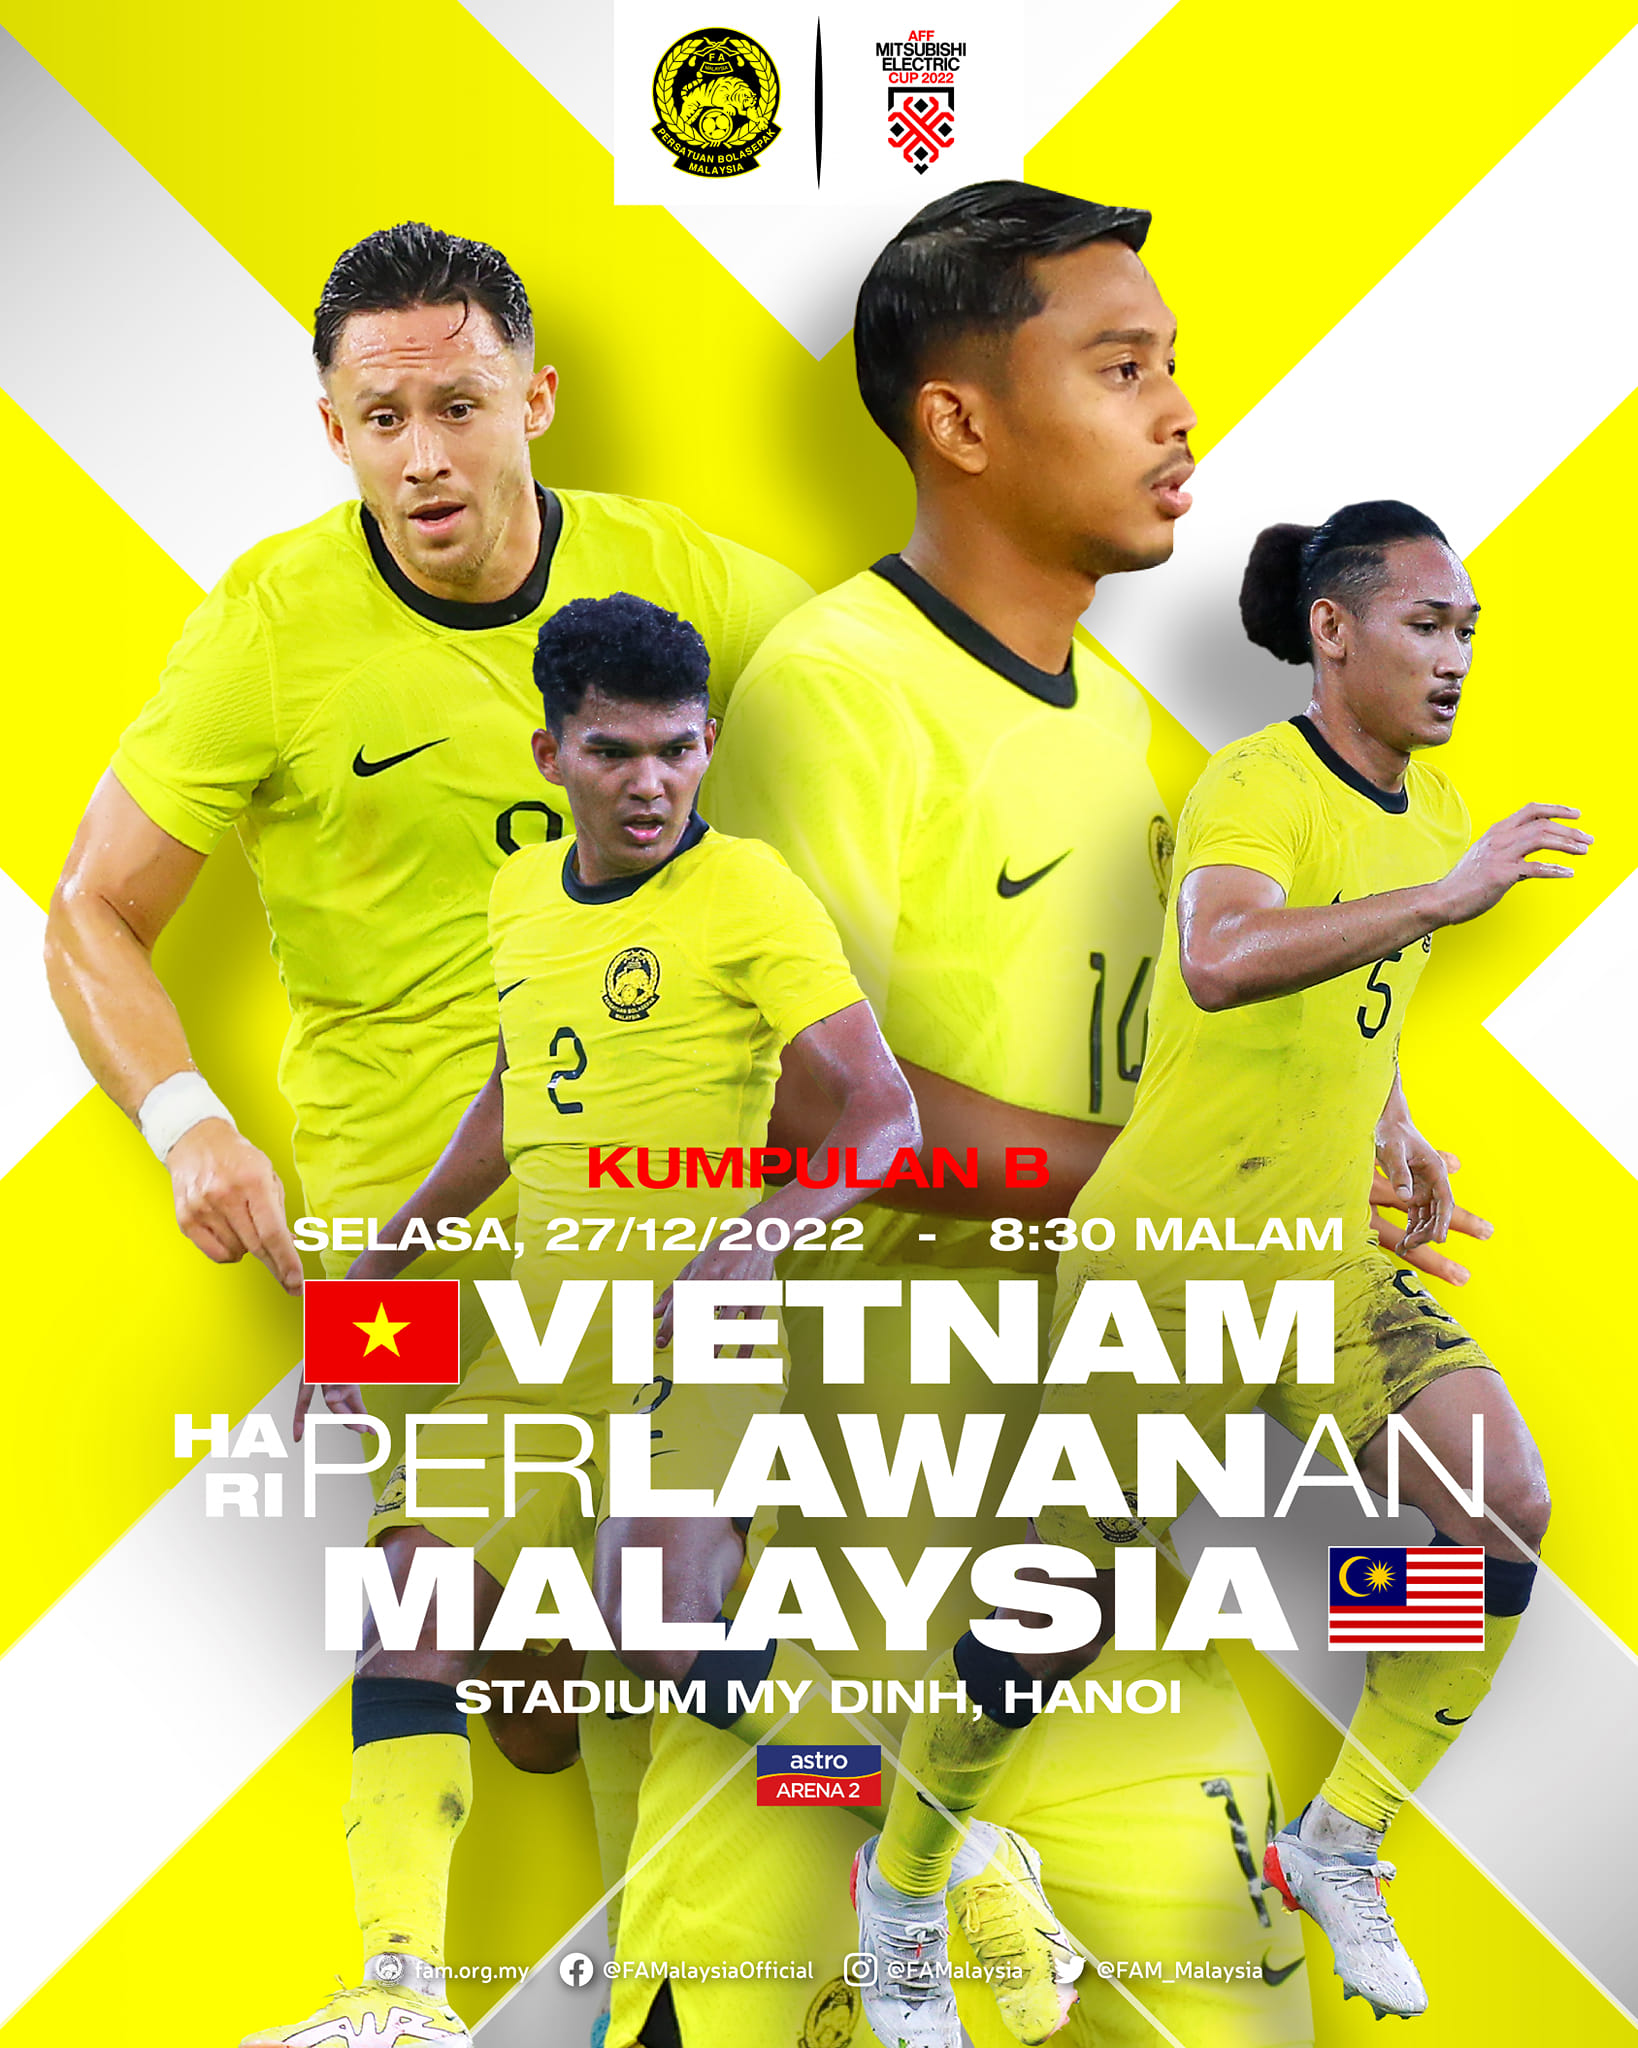 Hình ảnh được đăng tải trên trang Facebook Liên đoàn Bóng đá Malaysia về trận Việt Nam - Malaysia tối 27/12 trong khuôn khổ bảng B, AFF Cup 2022. Ảnh: FB